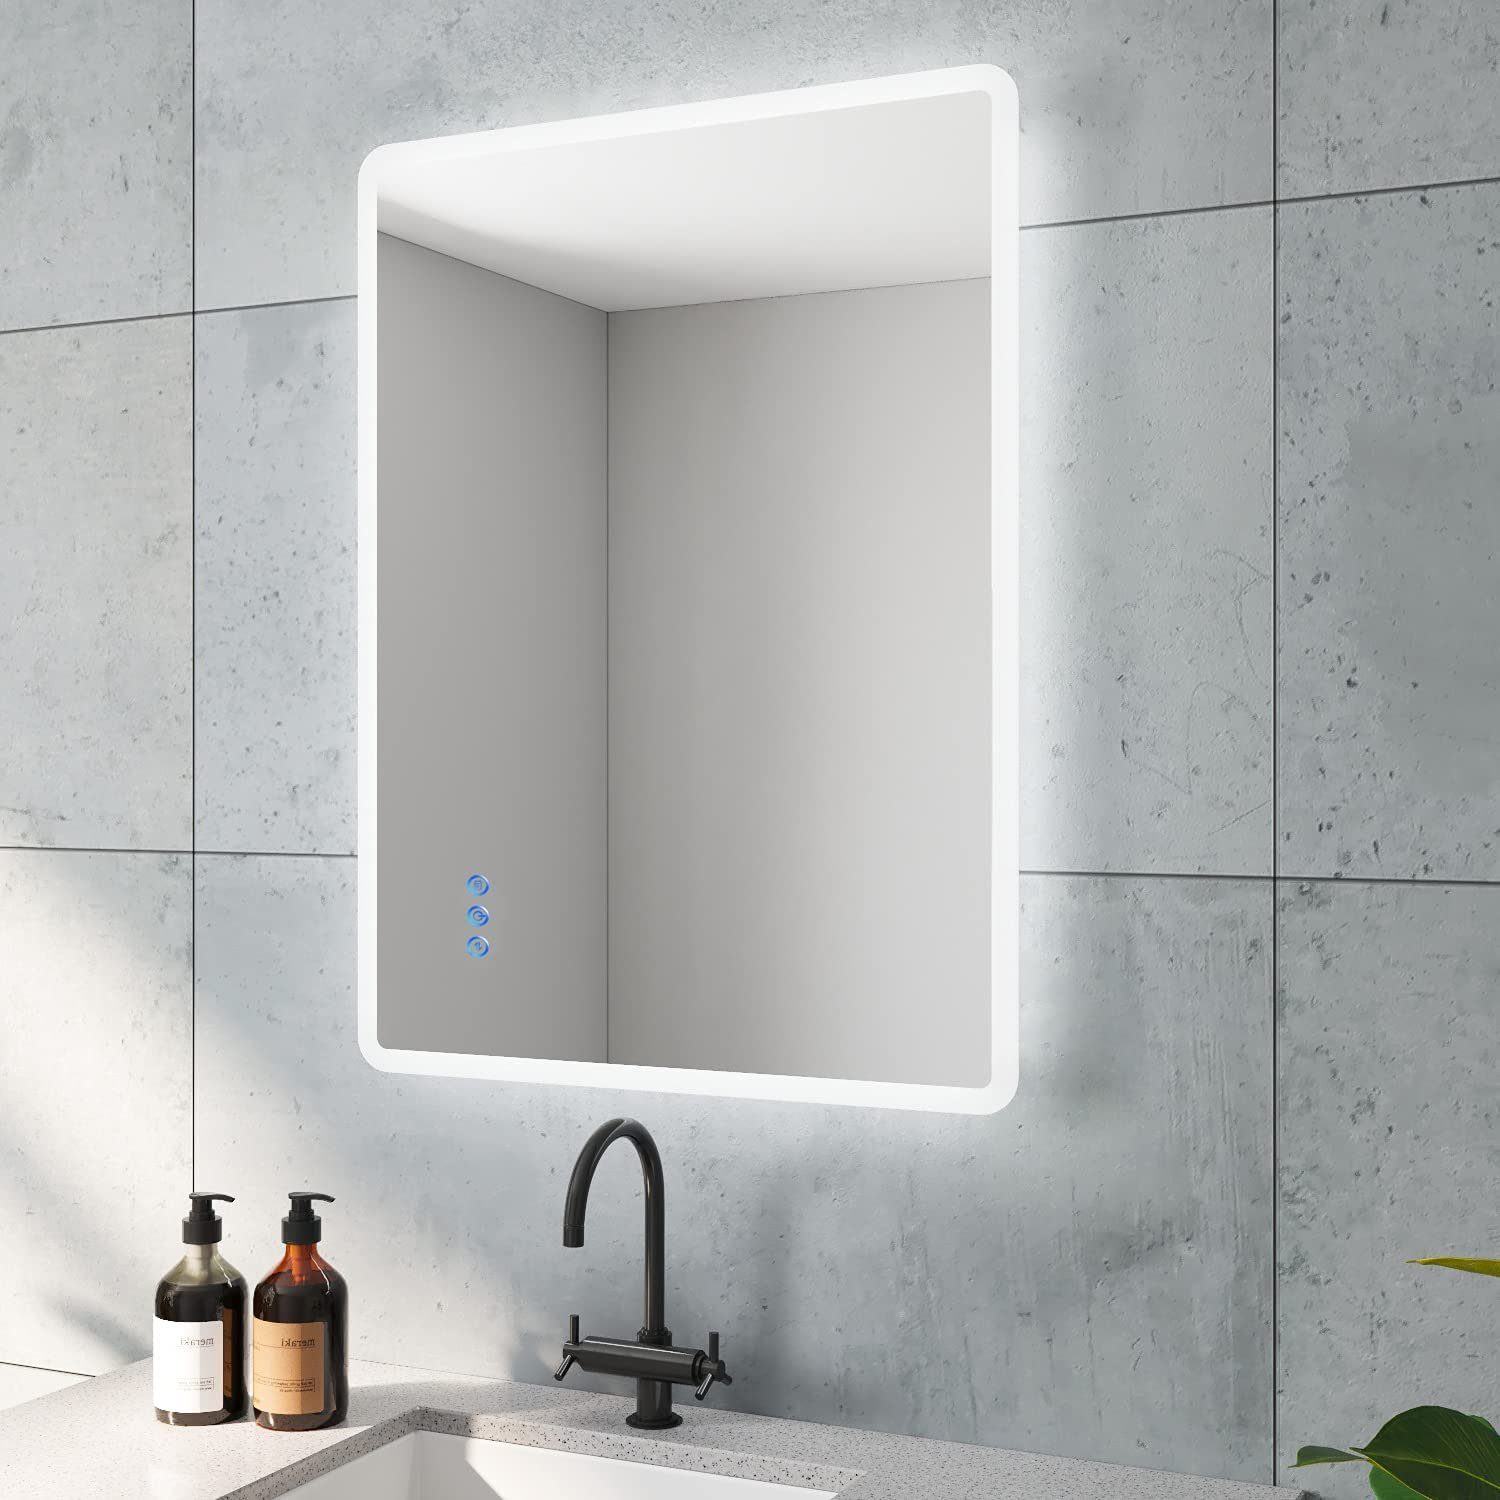 AQUABATOS Badspiegel Bad Spiegel mit LED Beleuchtung Badezimmerspiegel Lichtspiegel, 80x60 cm 3 Lichtfarben Touch Sensor Spiegelheizung Speicher Dimmbar